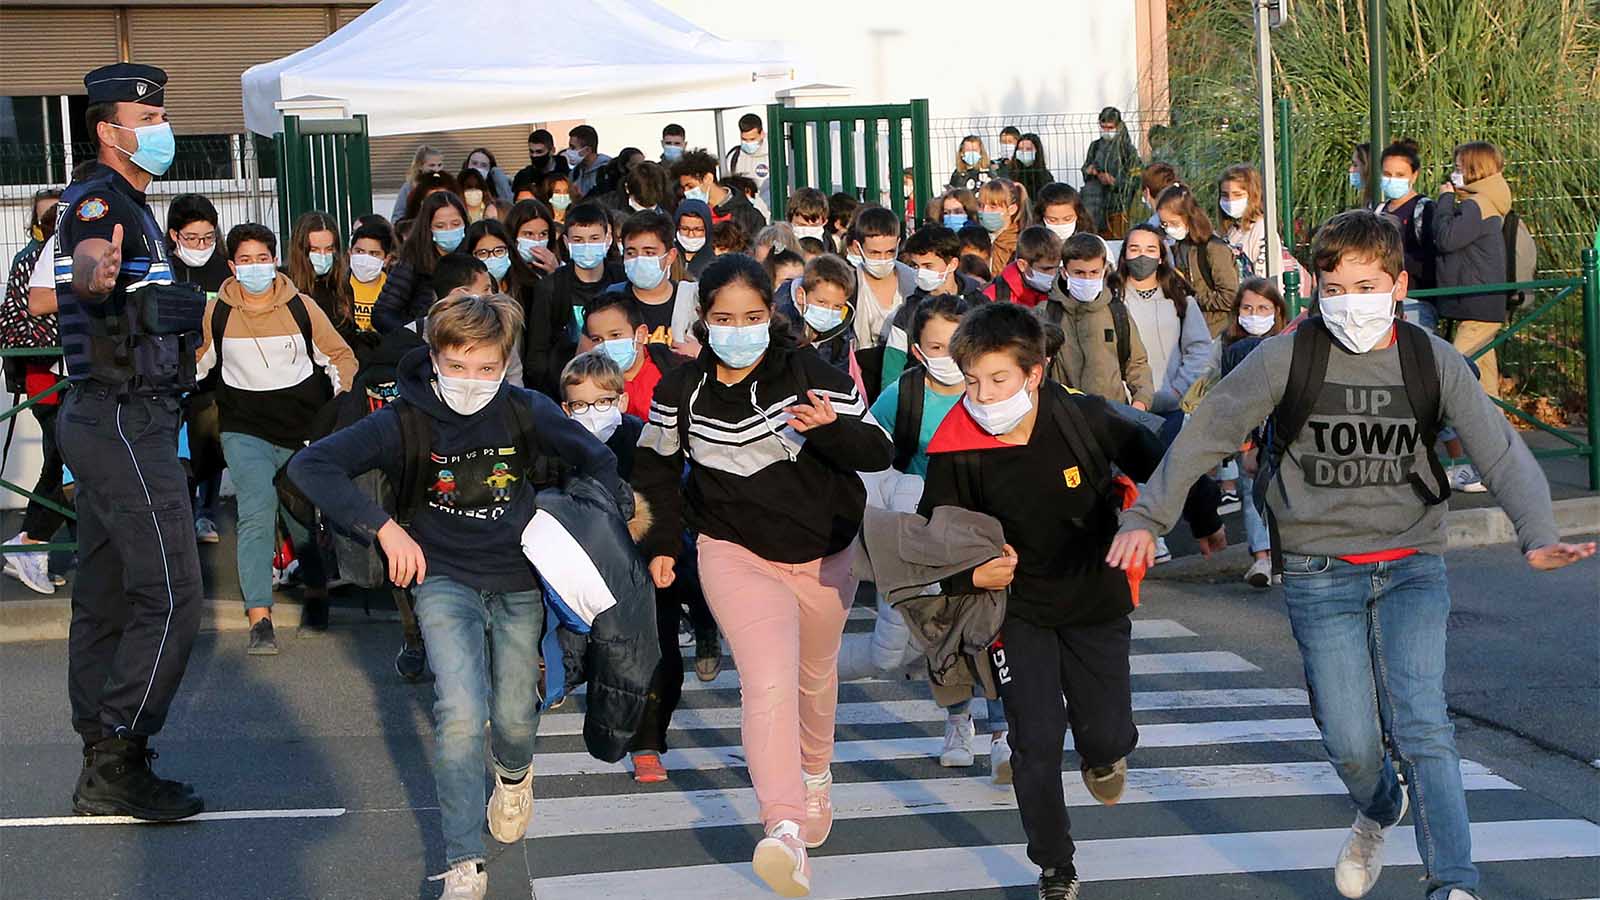 תלמידים יוצאים מיום לימודים בבית ספר בצרפת, במהלך הסגר השני במדינה, נובמבר 2020 (צילום: AP/Bob Edme)